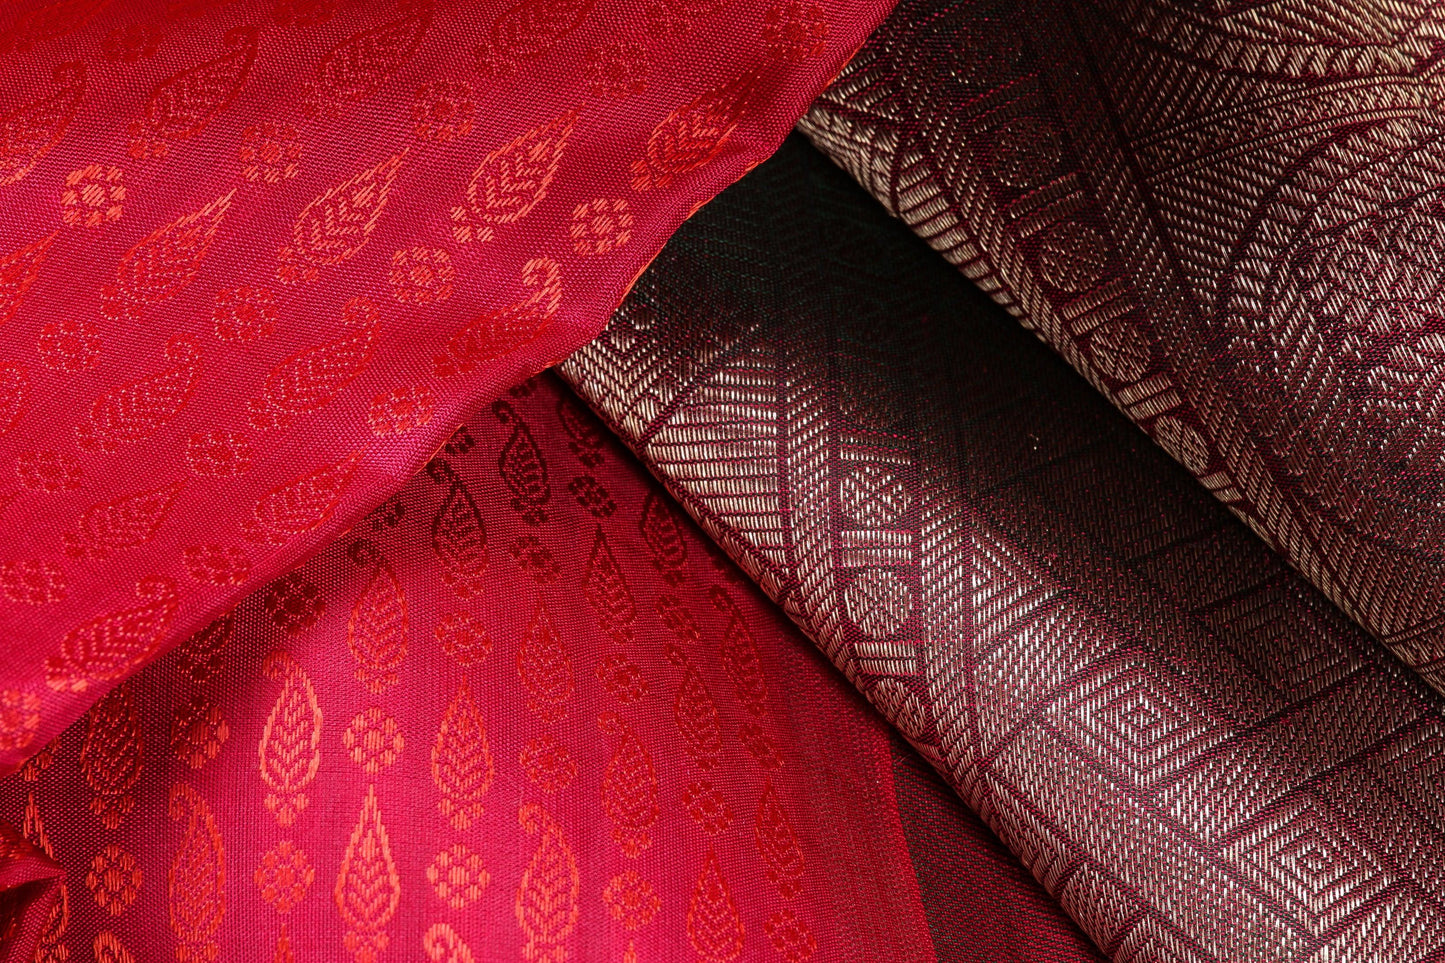 Panjavarnam Kanjivaram Silk Saree Archives PVF 0218 1020 - Silk Sari - Panjavarnam